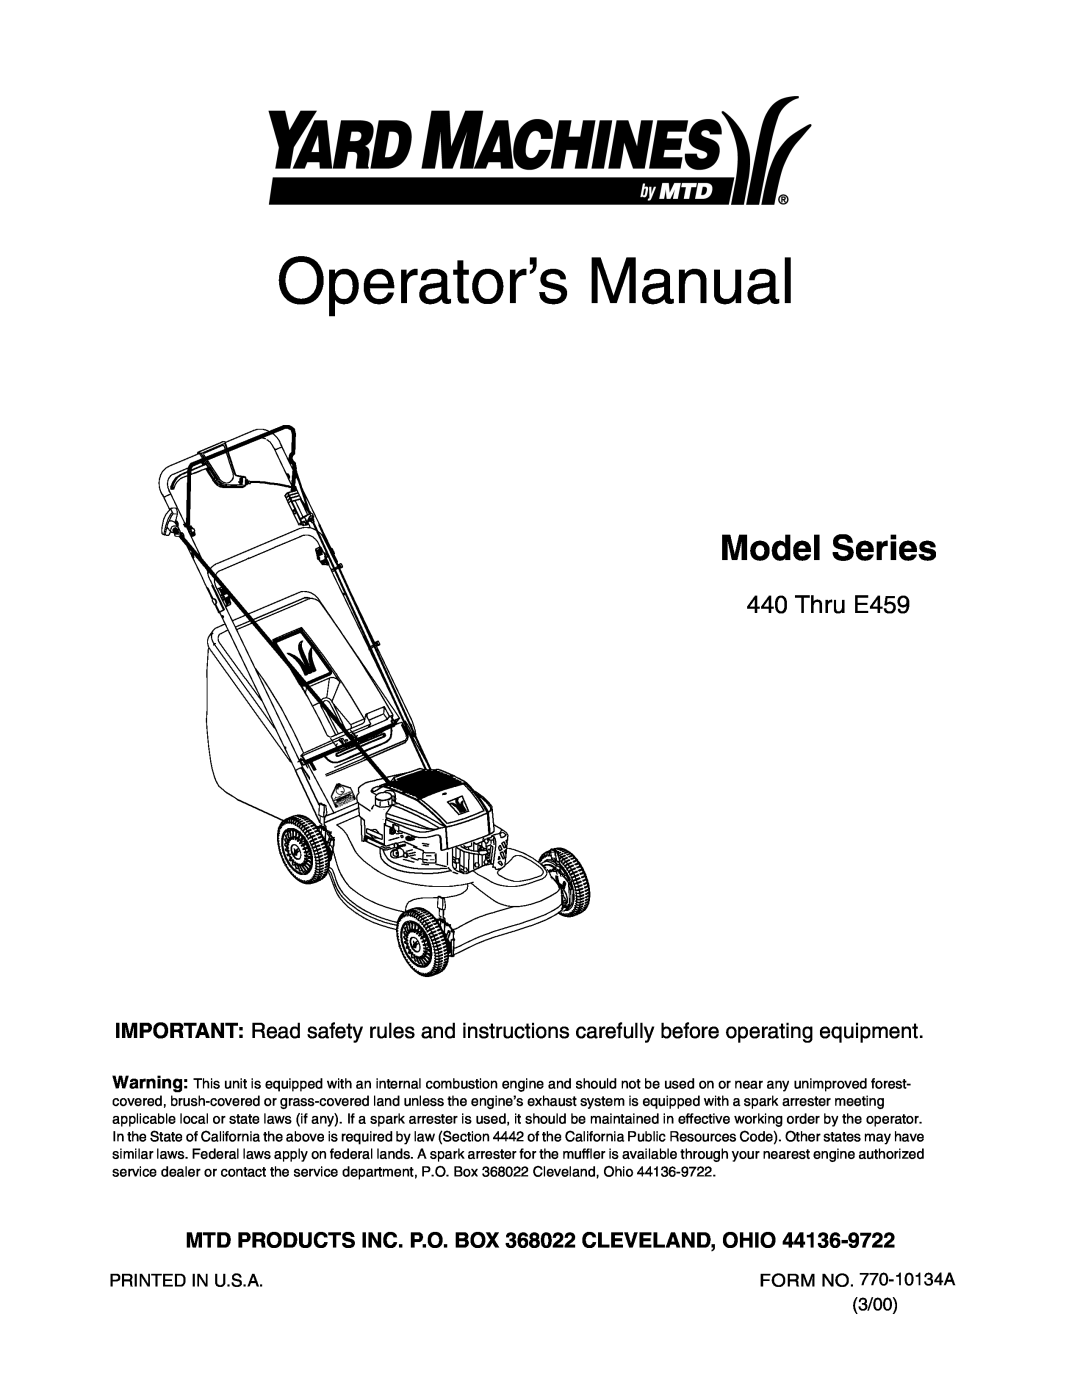 MTD 440 Thru E459 manual MTD PRODUCTS INC. P.O. BOX 368022 CLEVELAND, OHIO, Operator’s Manual, Model Series 